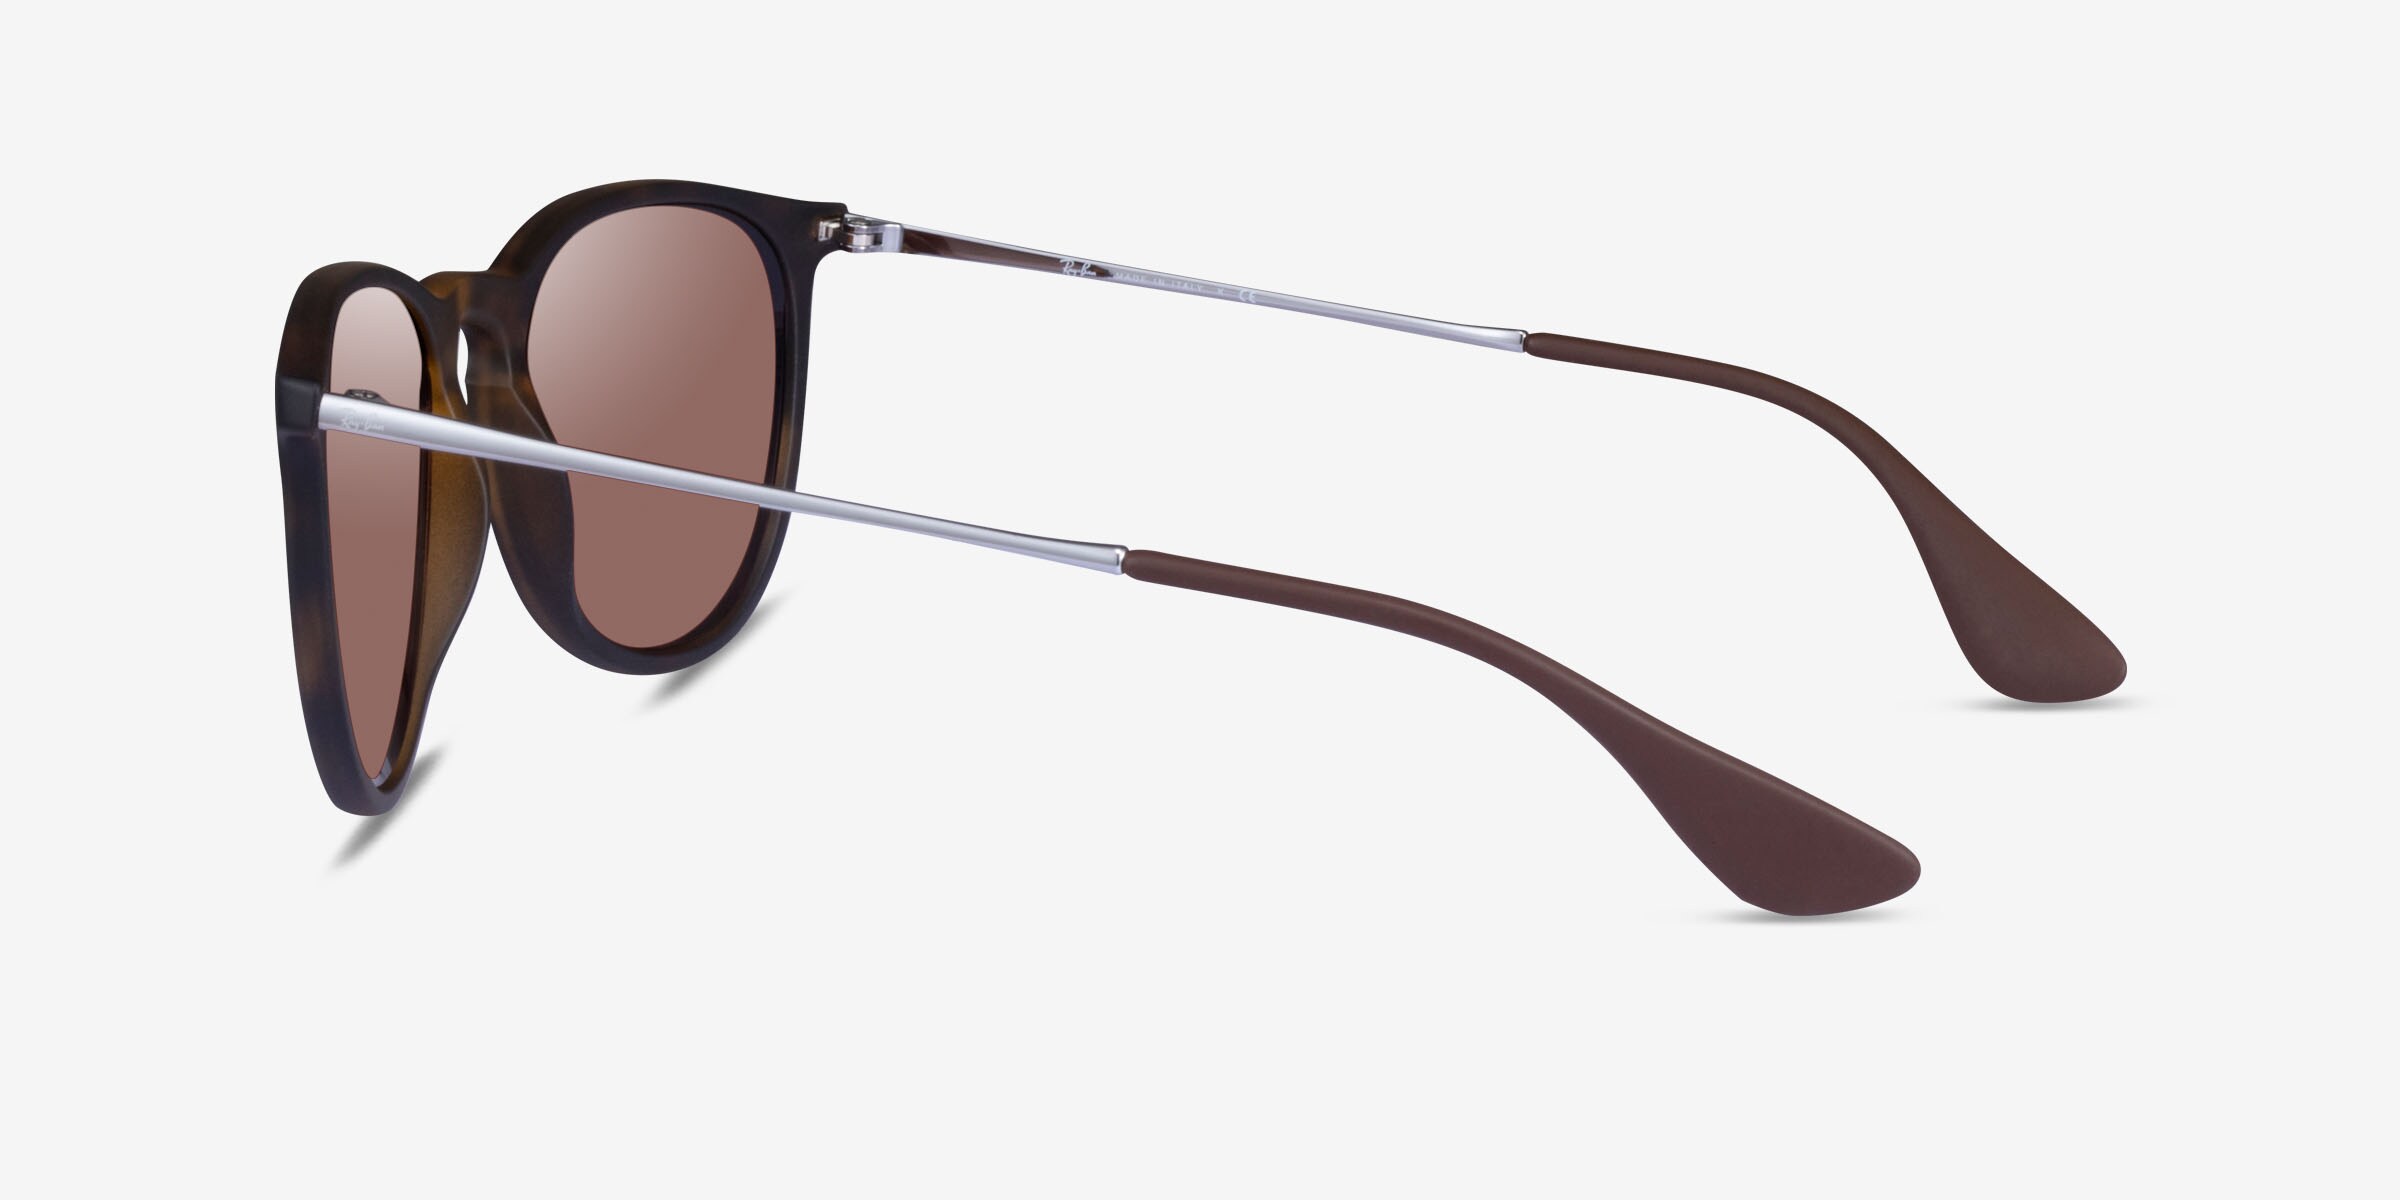 Ray-Ban RB4171 Erika - Oval Tortoise Frame Sunglasses For Women